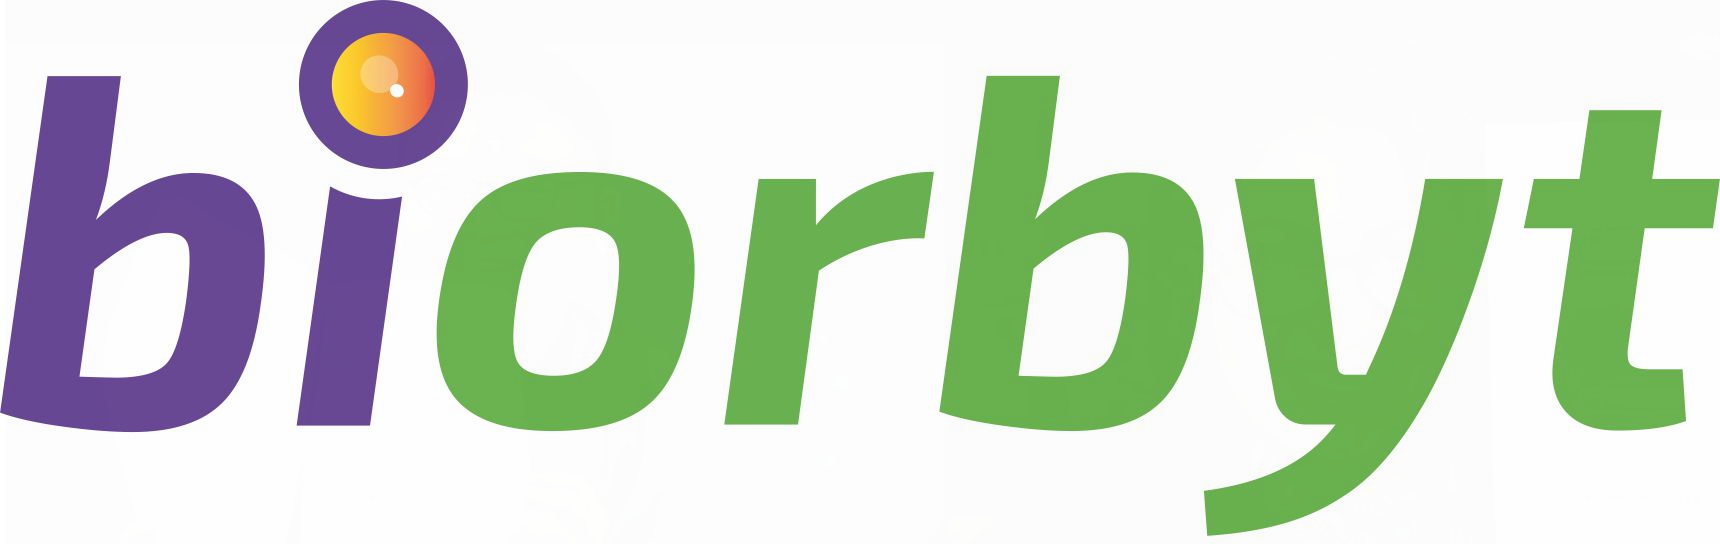 biorbyt-high-res-logo-no-strapline |